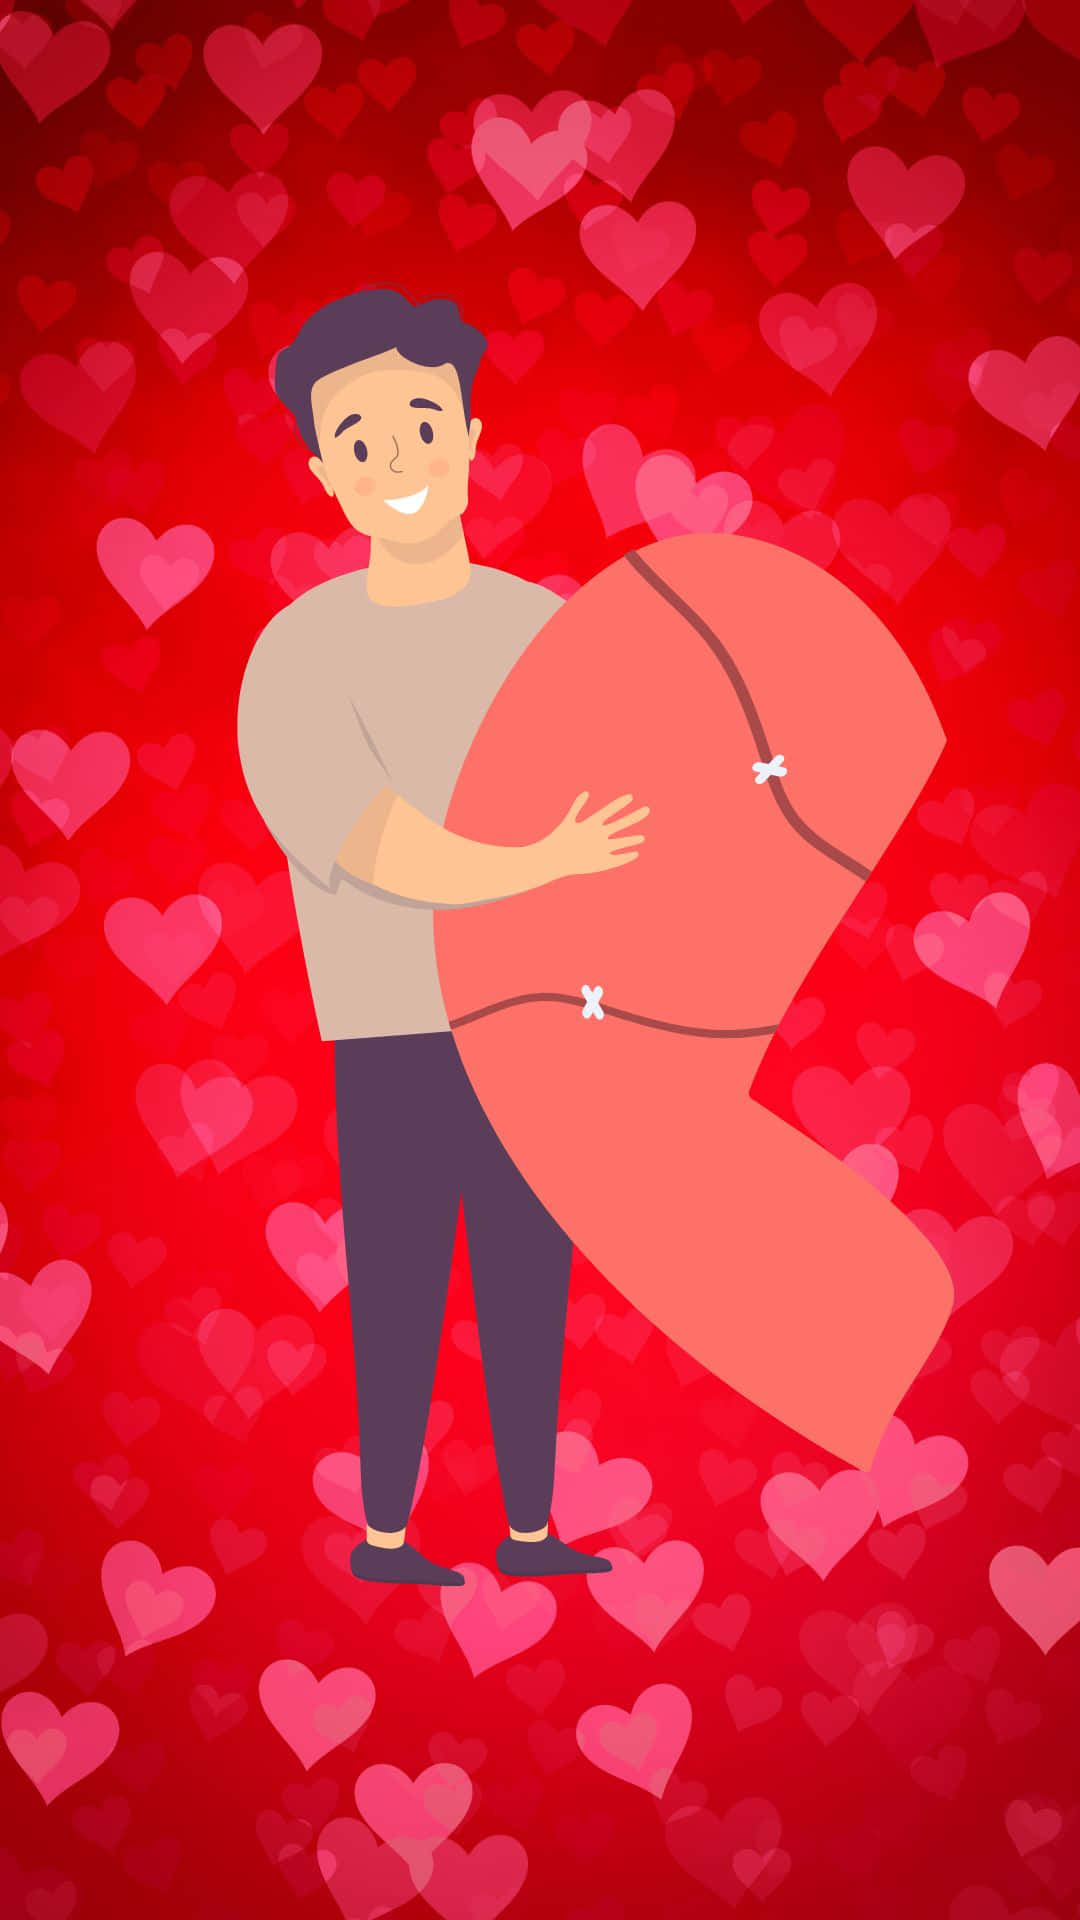 Man Holding Half Heart Illustration Wallpaper